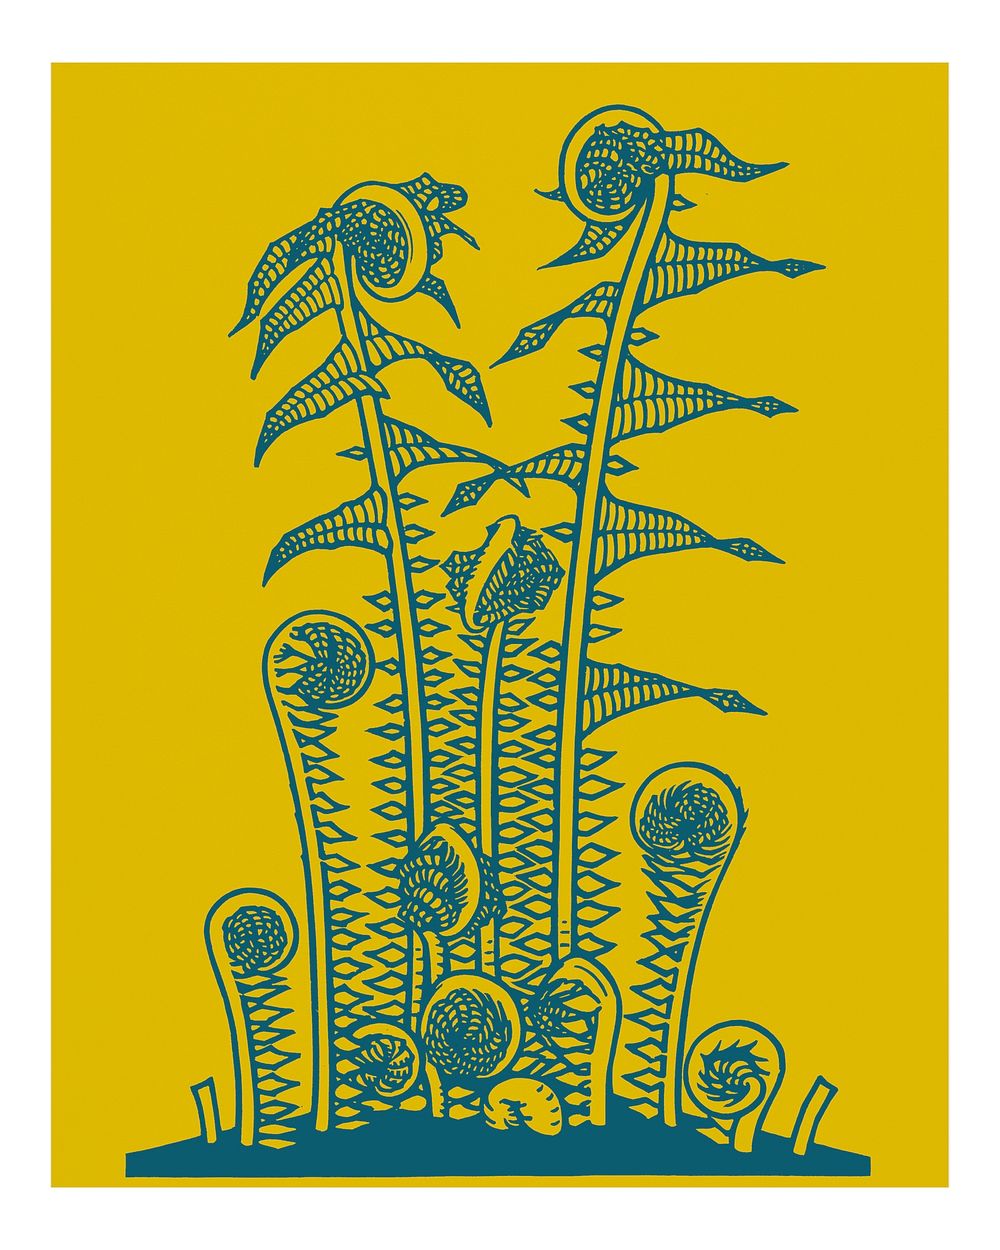 Vintage ferns illustration wall art print and poster design.